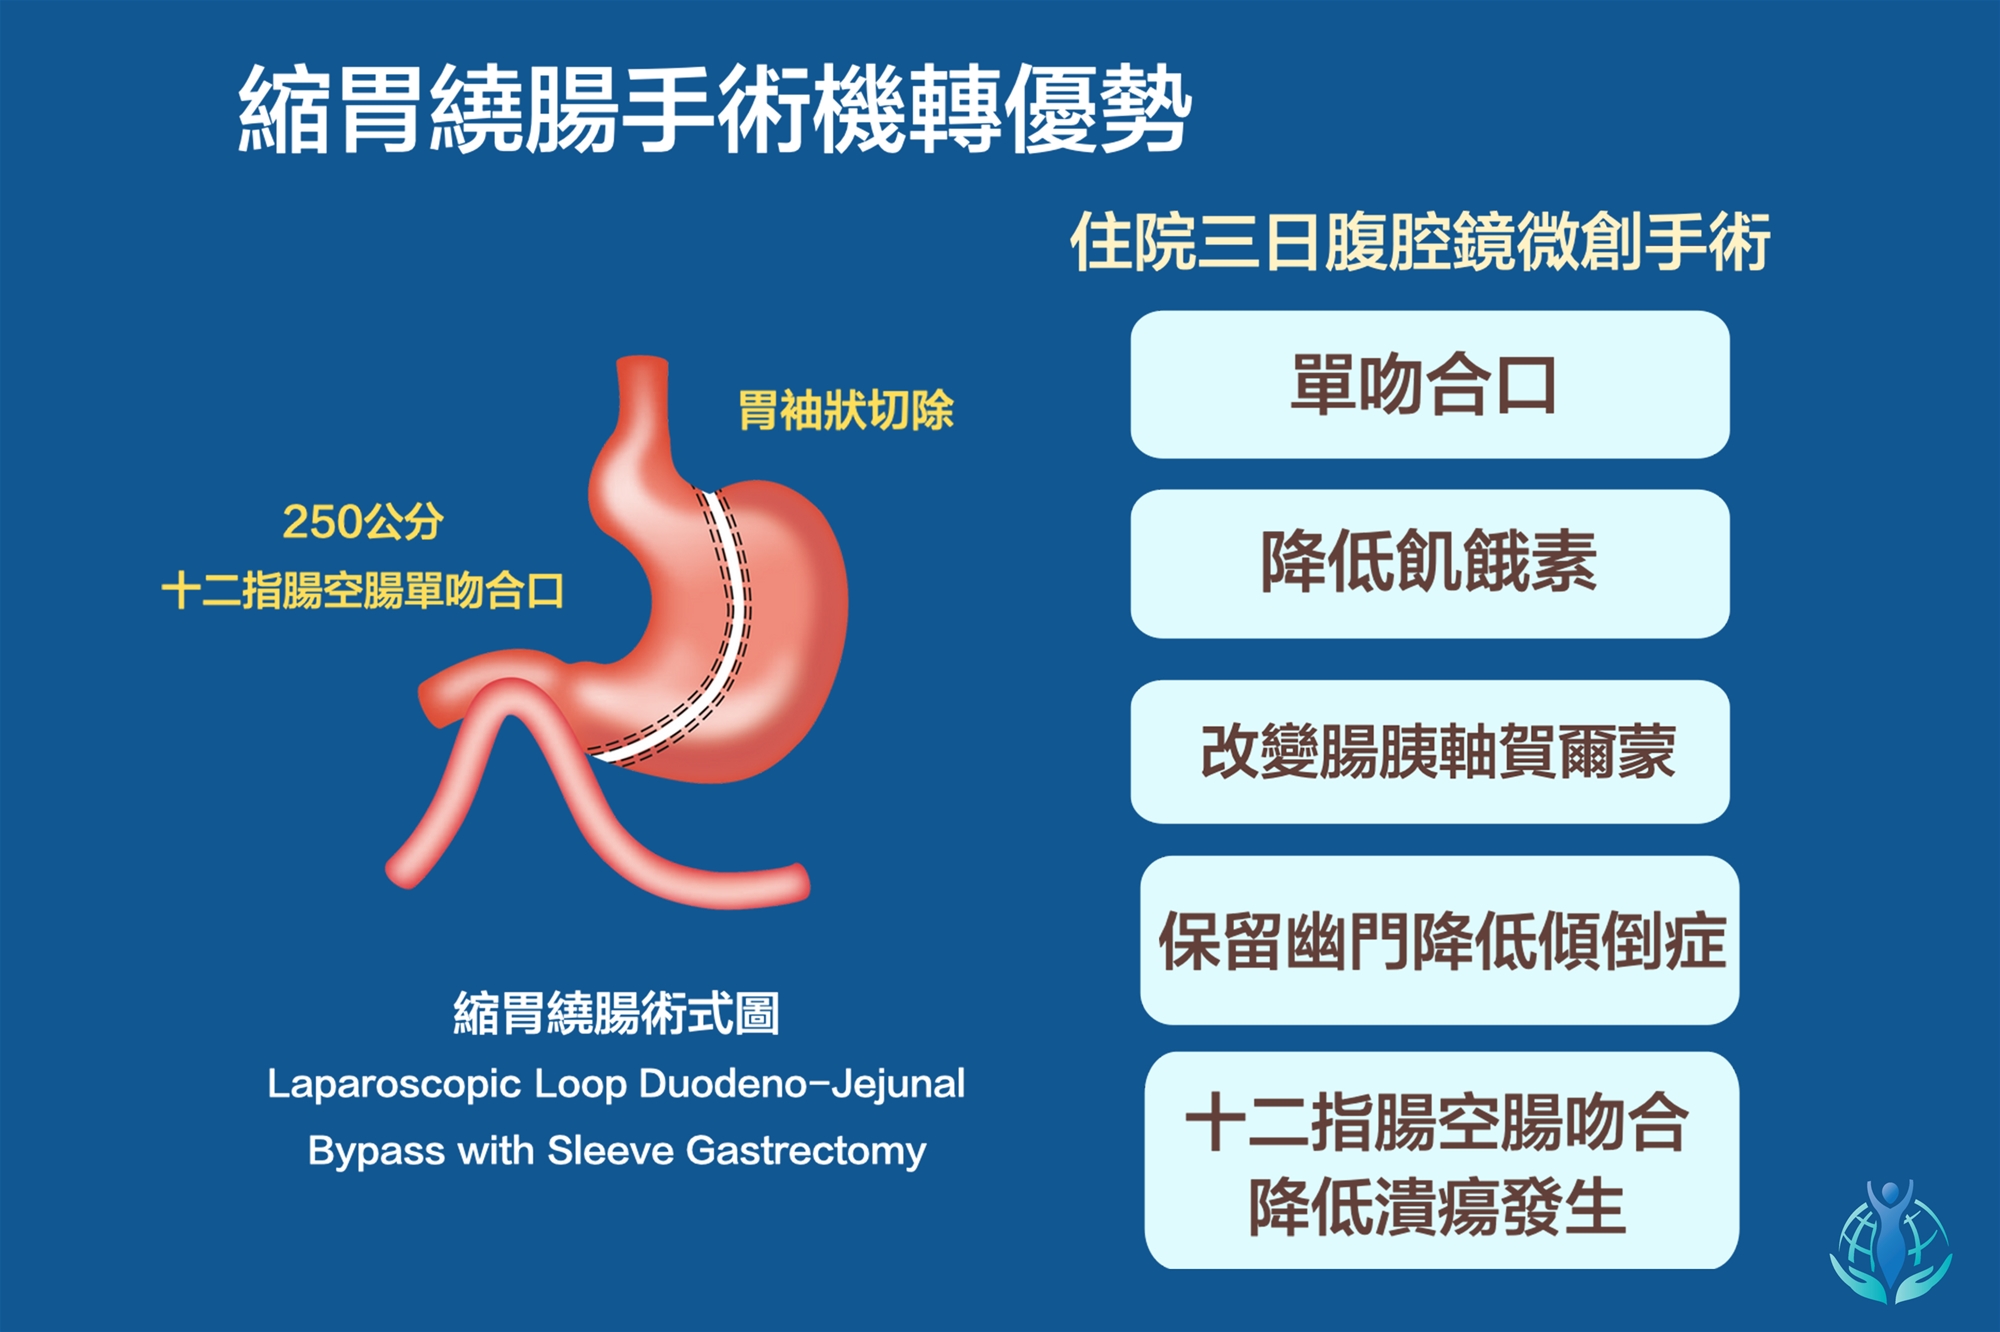 縮胃繞腸手術之優勢